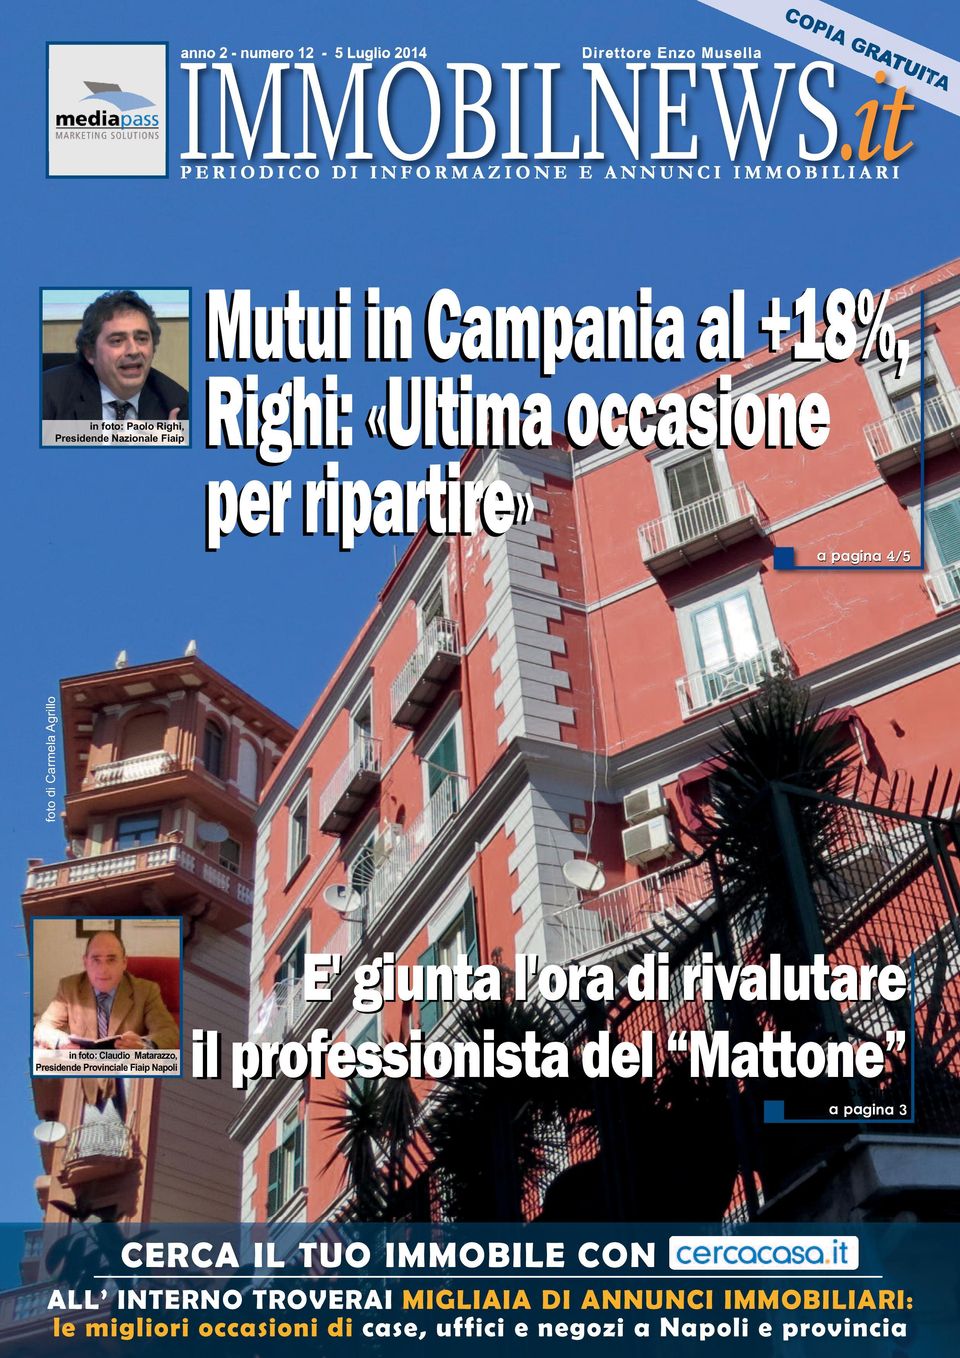 Claudio Matarazzo, Presidende Provinciale Fiaip Napoli il professionista del Mattone "Mattone a pagina 7 a pagina 3 CERCA IL TUO